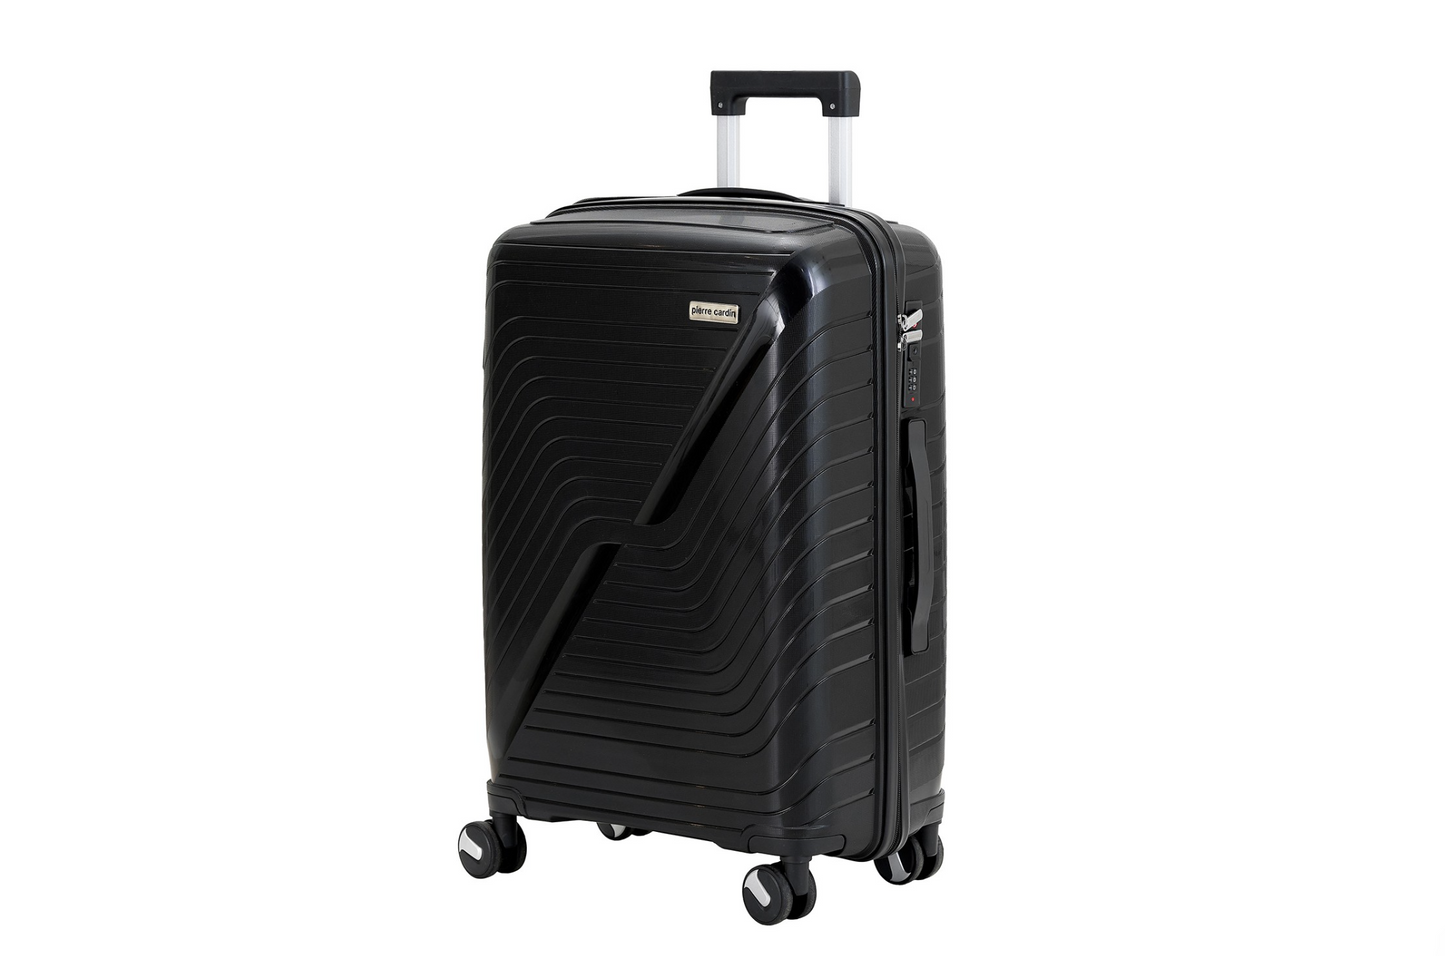 Pierre Cardin suitcase